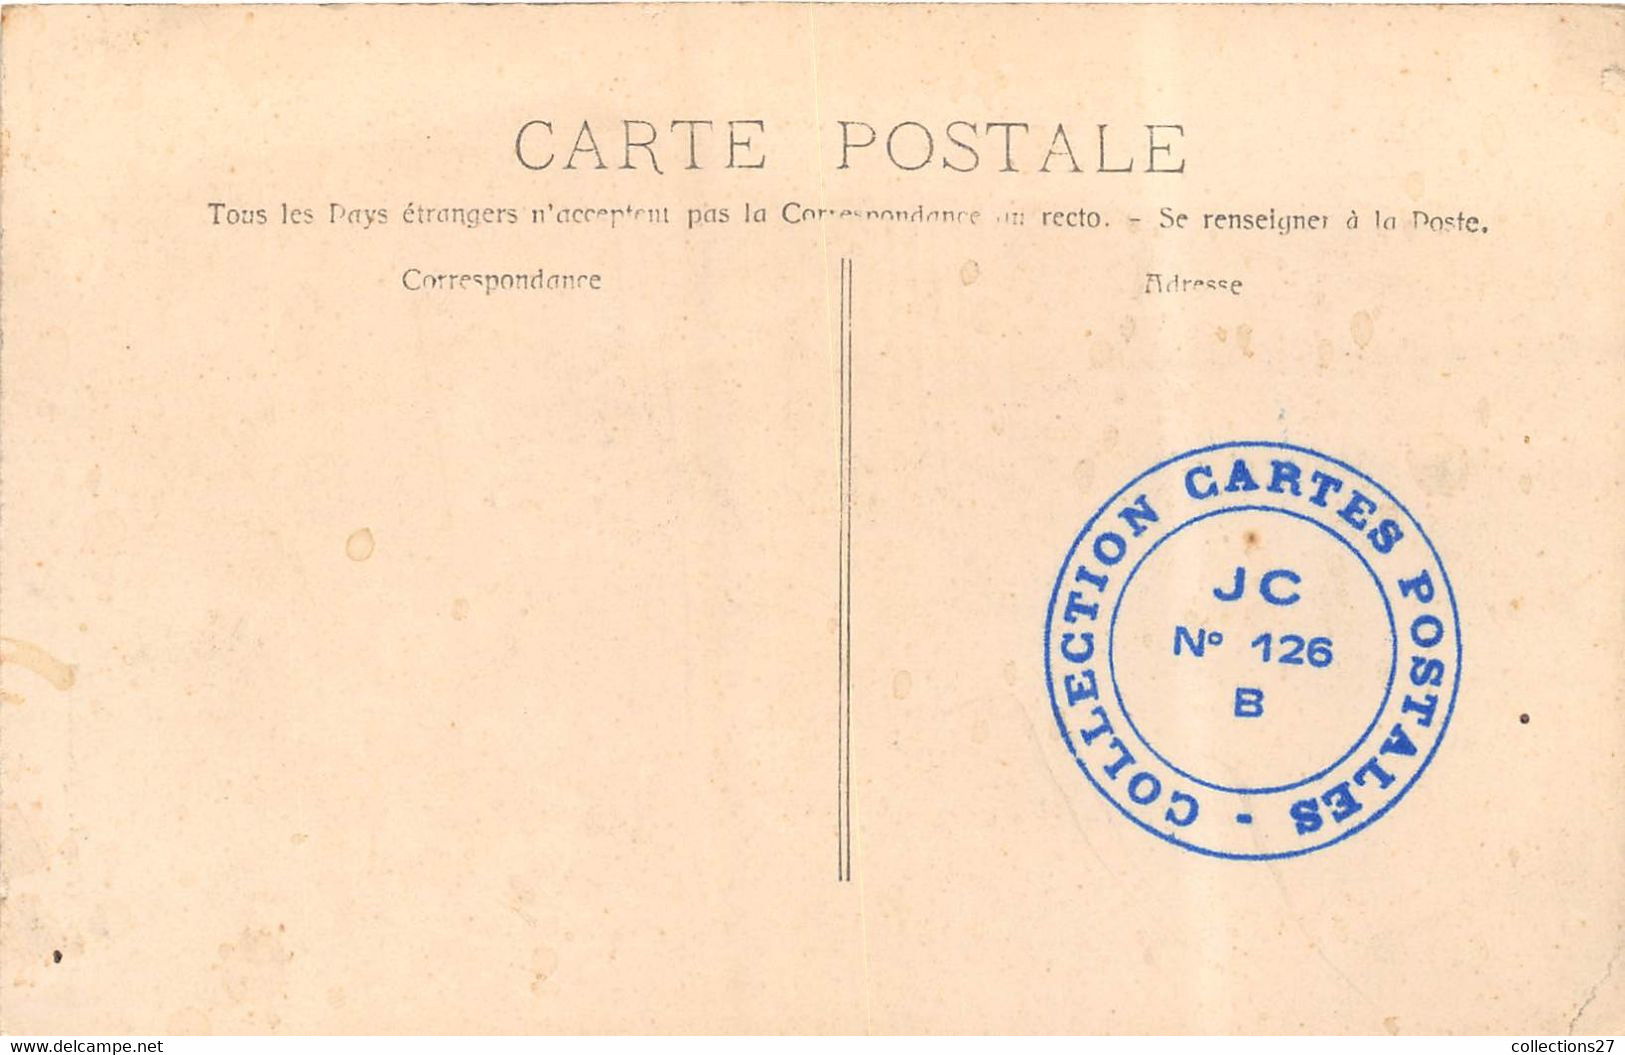 13-AUBAGNE- FÊTES 1908 DE CHARITE- VILLE D'AUBAGNE - Aubagne